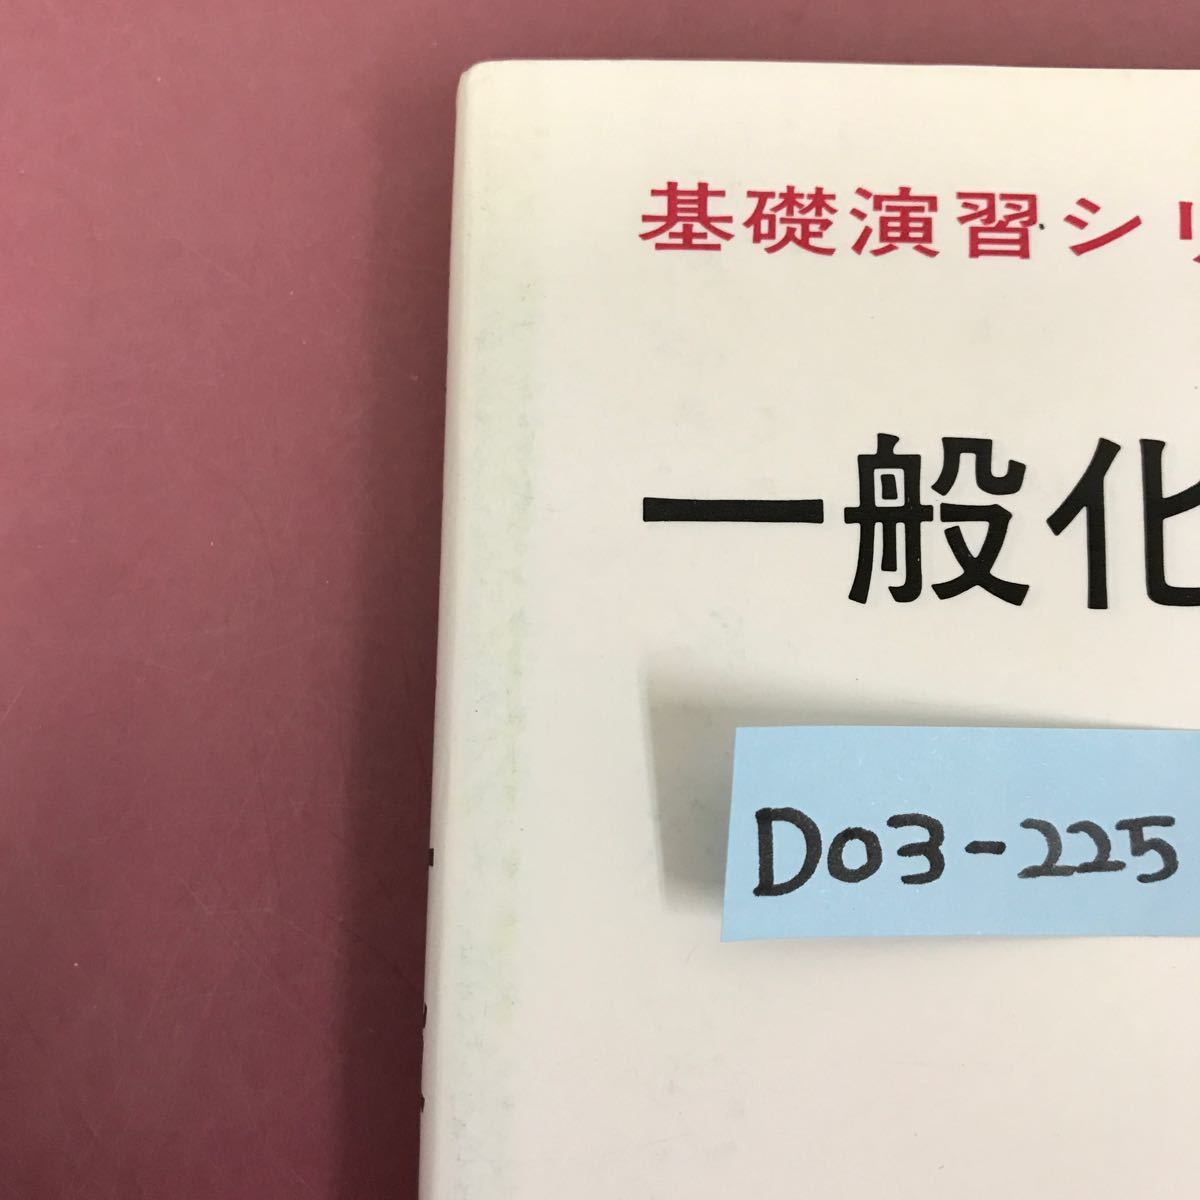 D03-225 基礎演習シリーズ 一般科学 富田 功 著 表紙カバーすれ汚れ有り _画像9